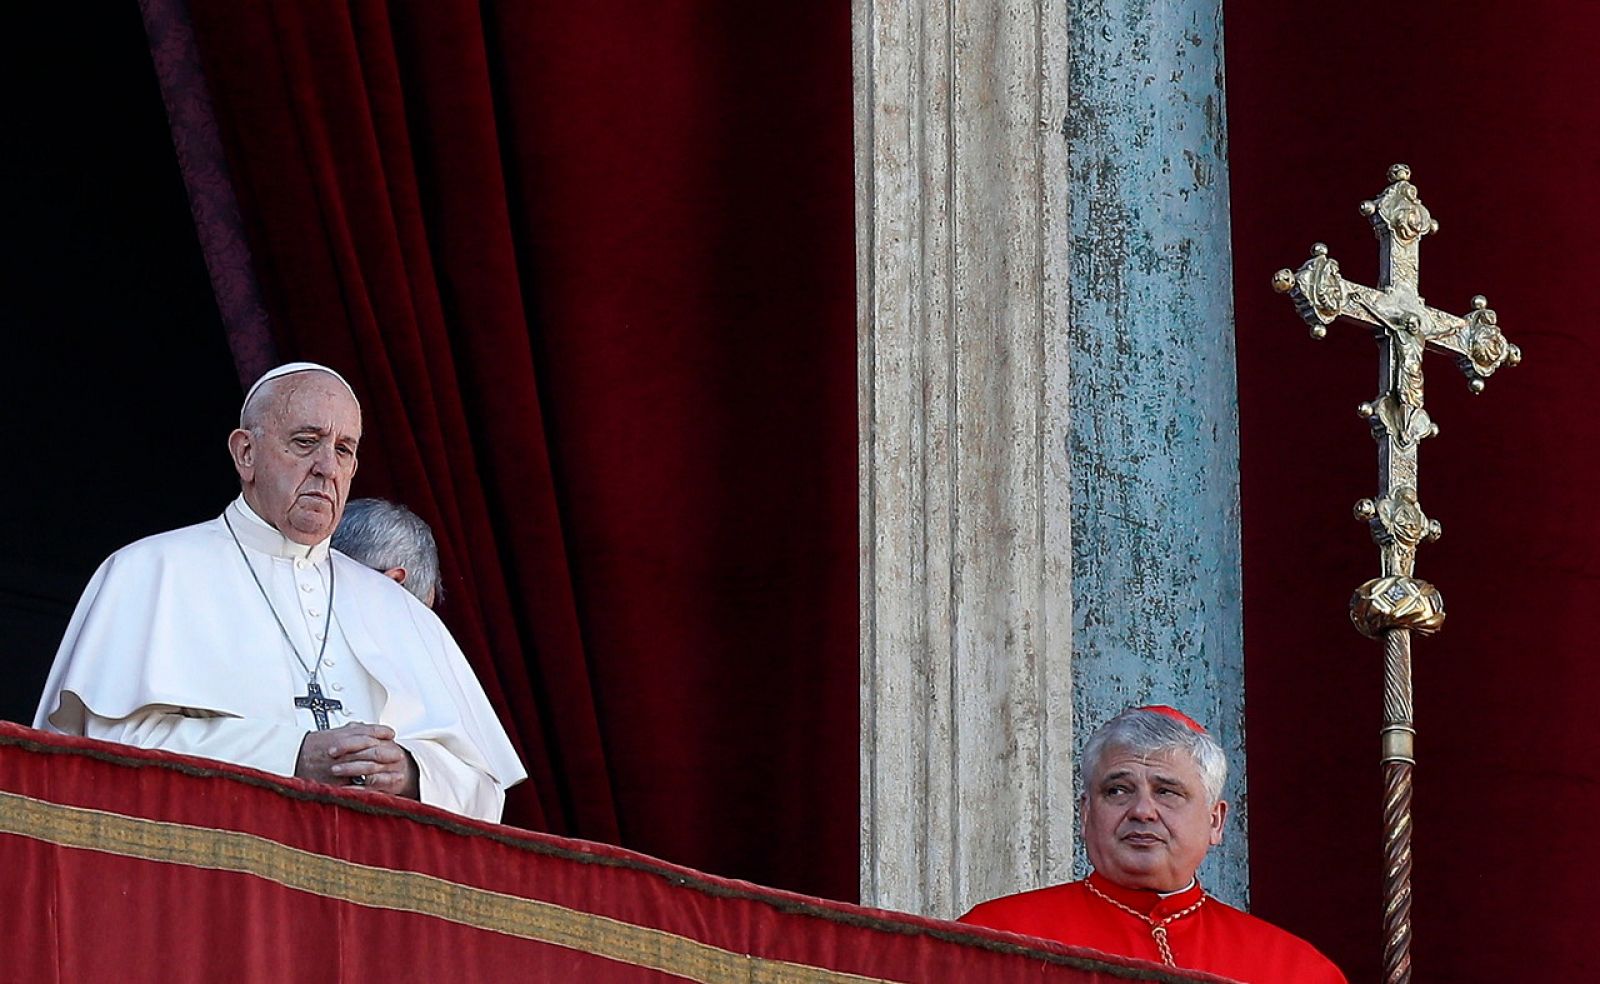 El papa habla de las "tinieblas" del mundo, de Latinoamérica a Siria y Líbano